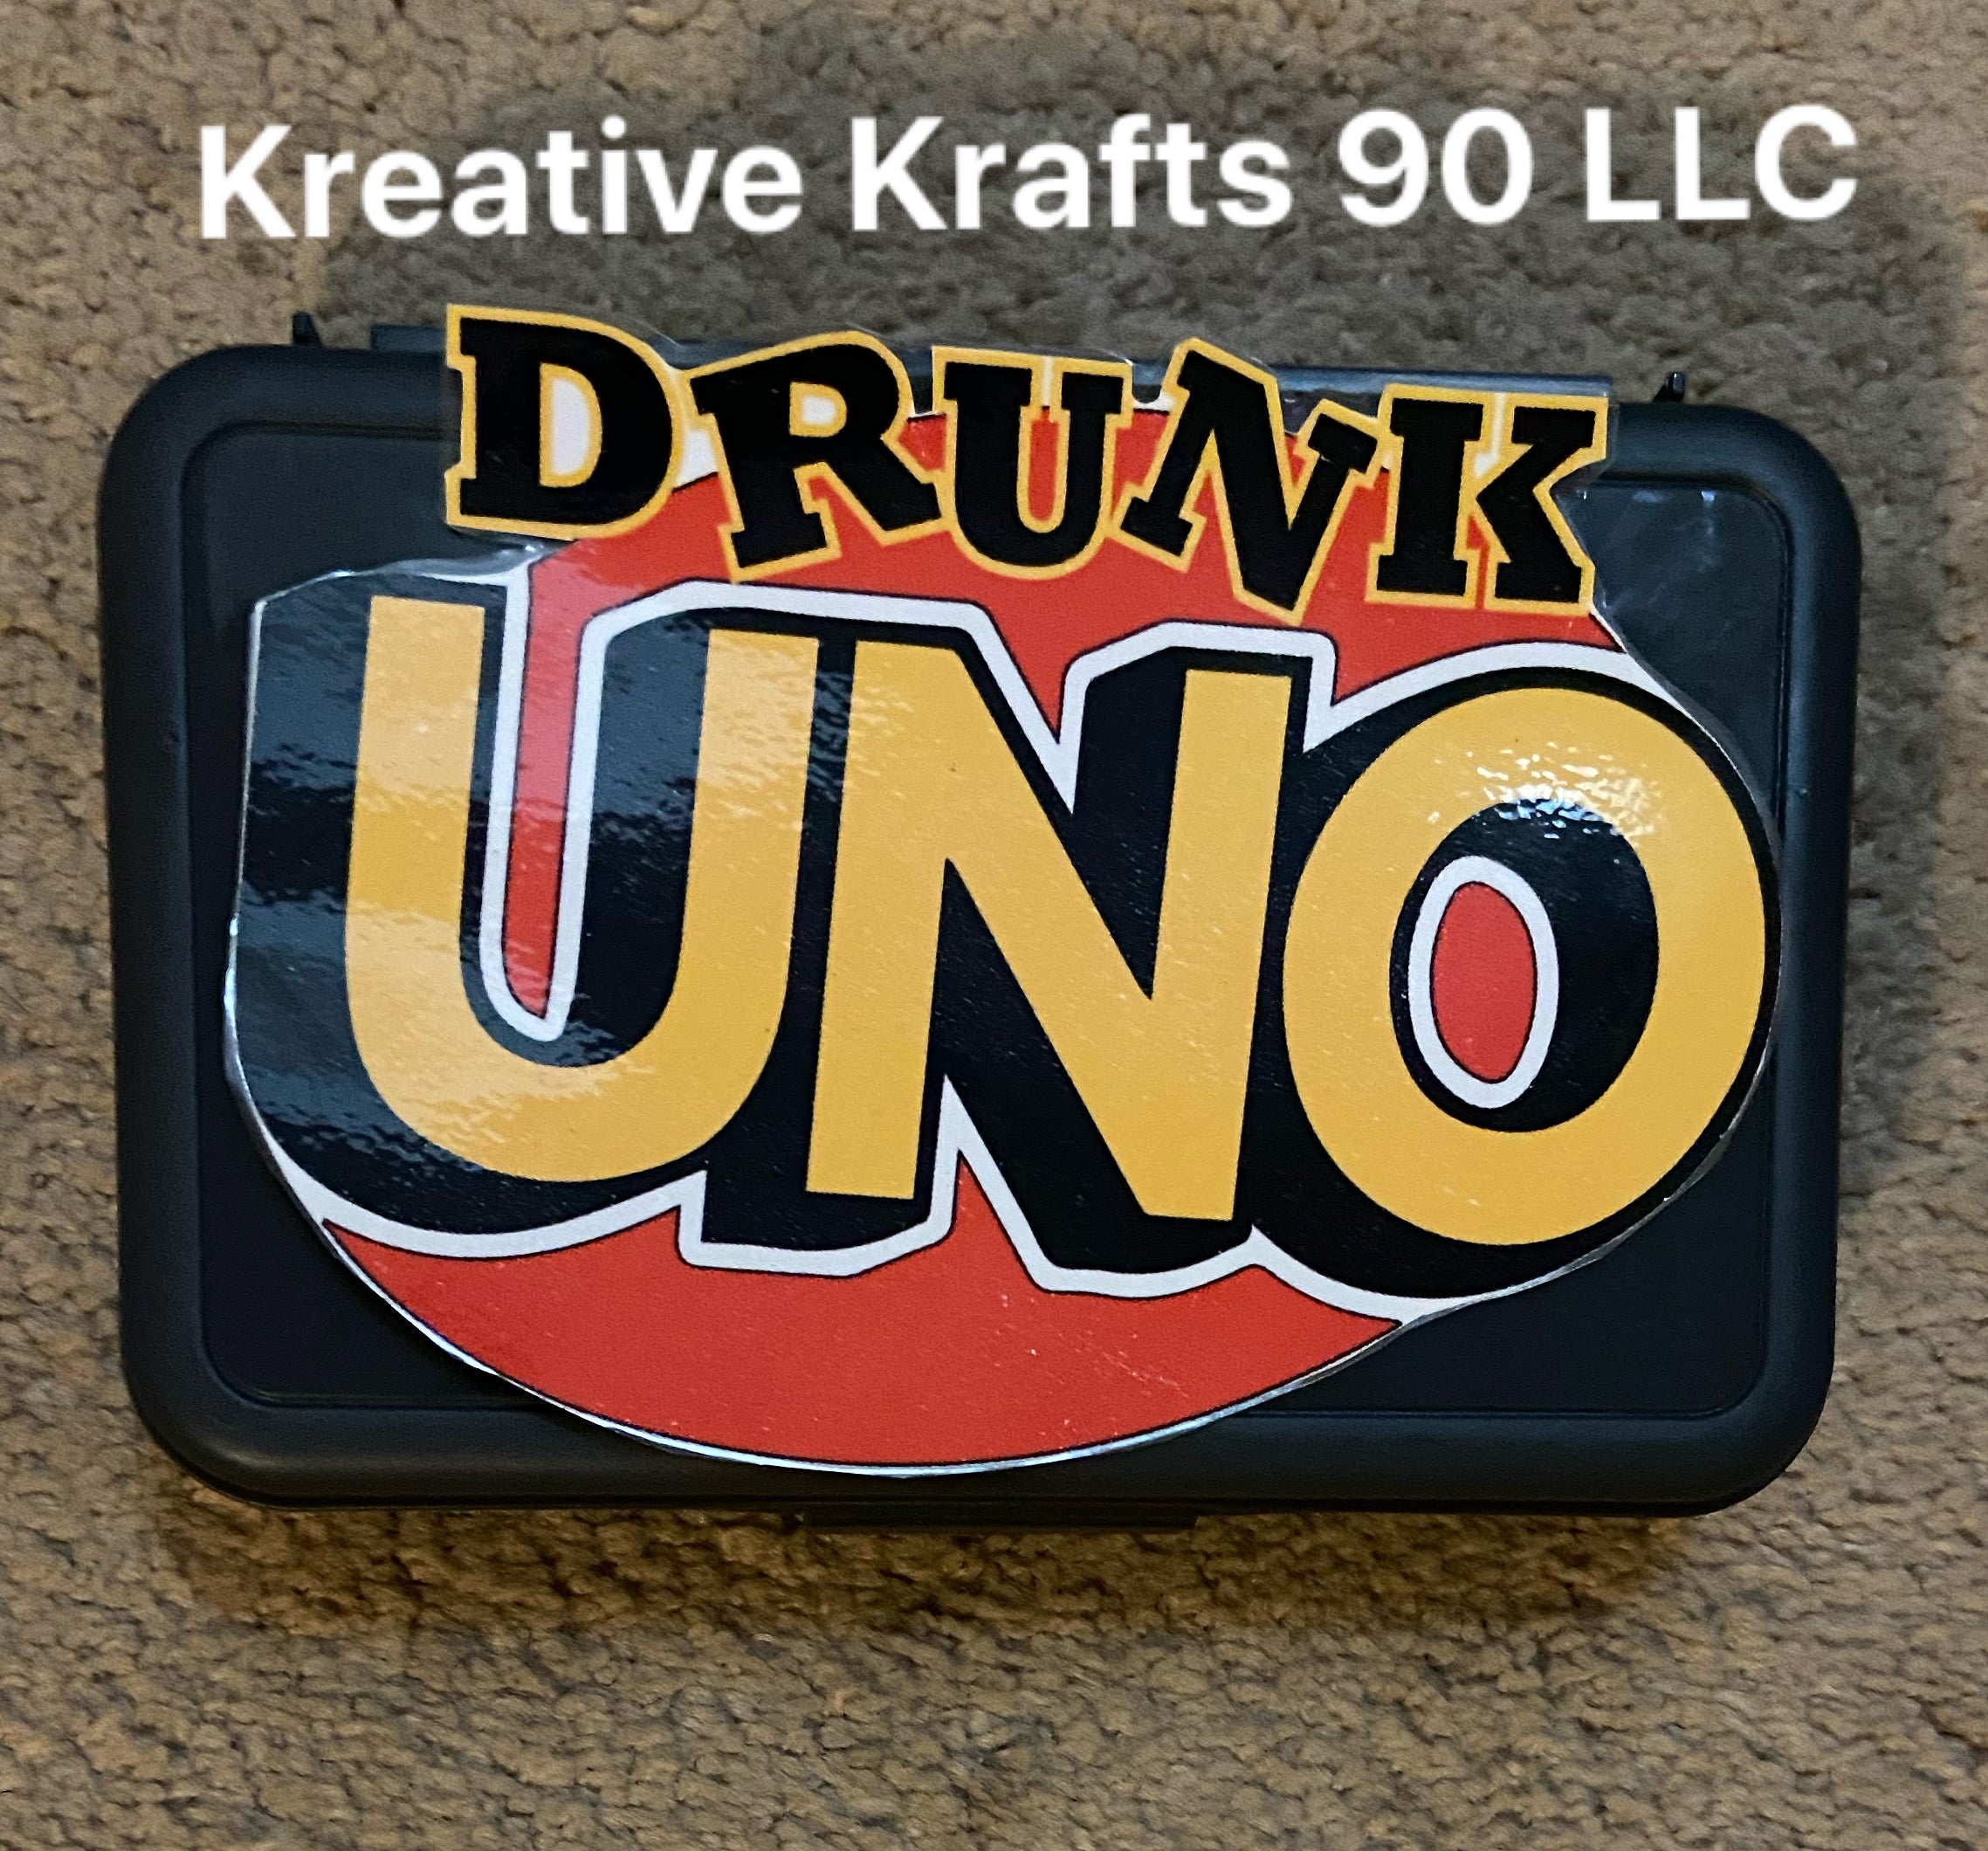 DRUNK UNO - Uno